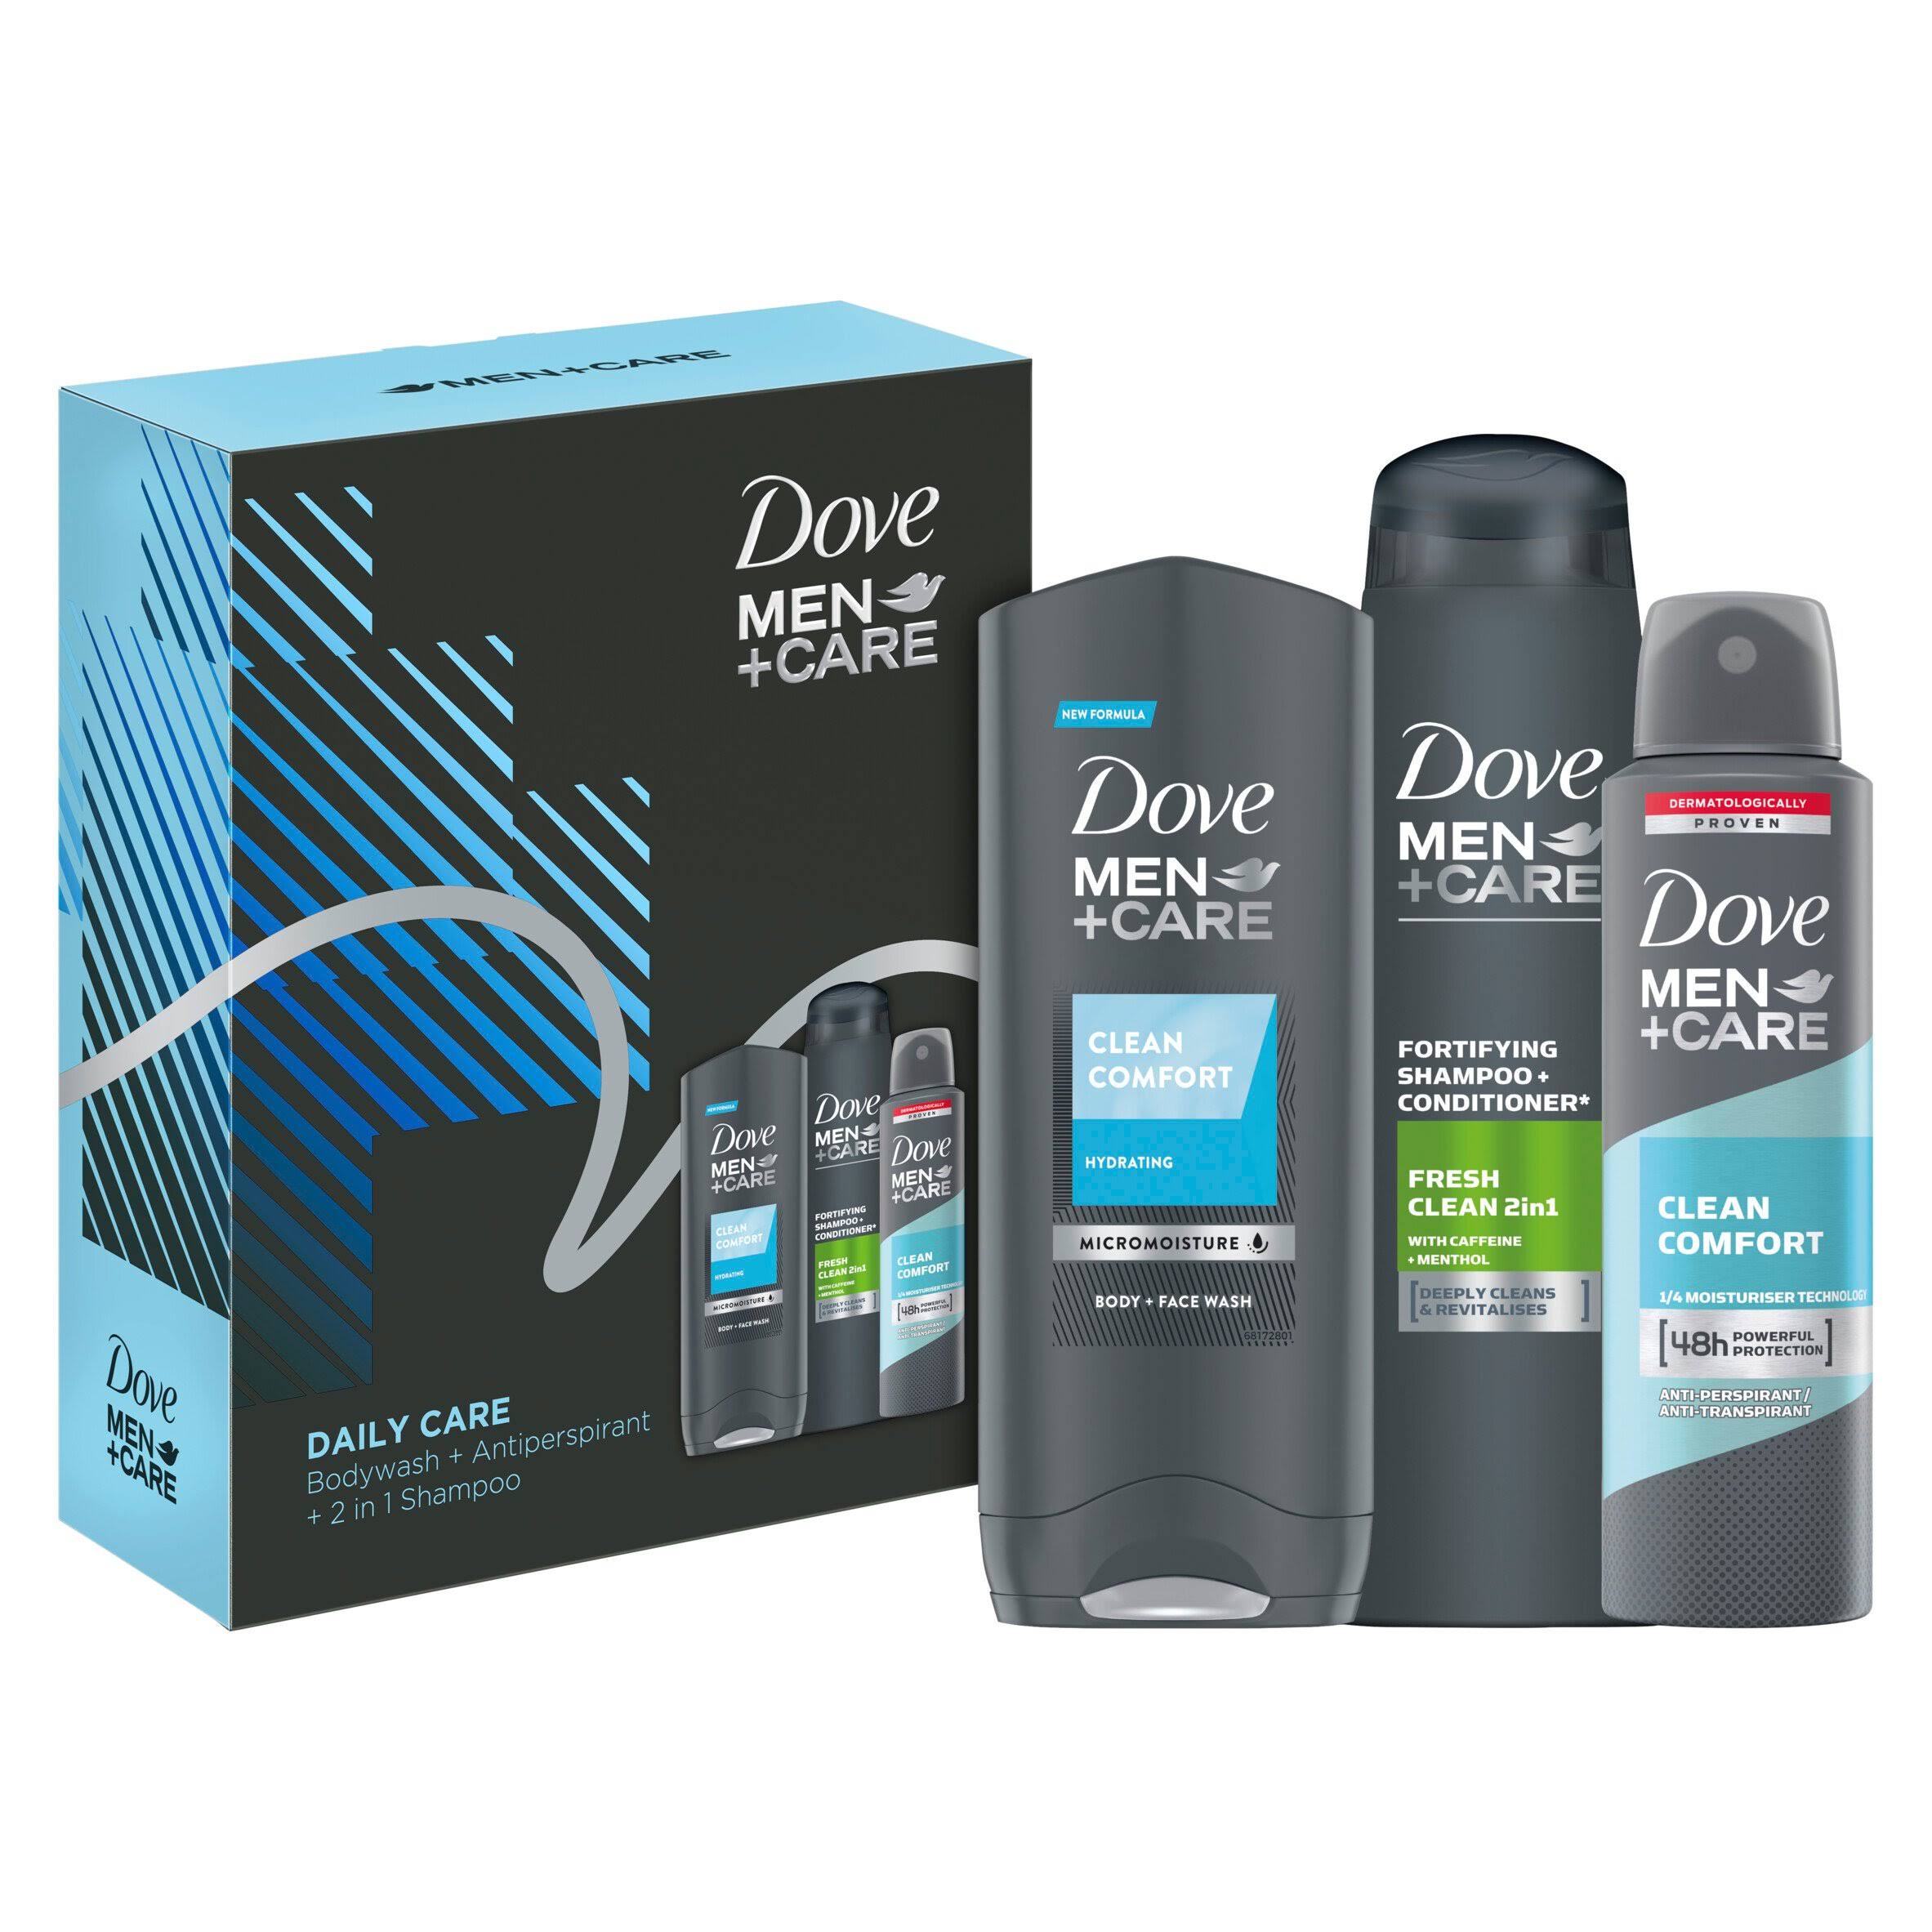 Dove Men+Care Daily Care Trio Gift Set